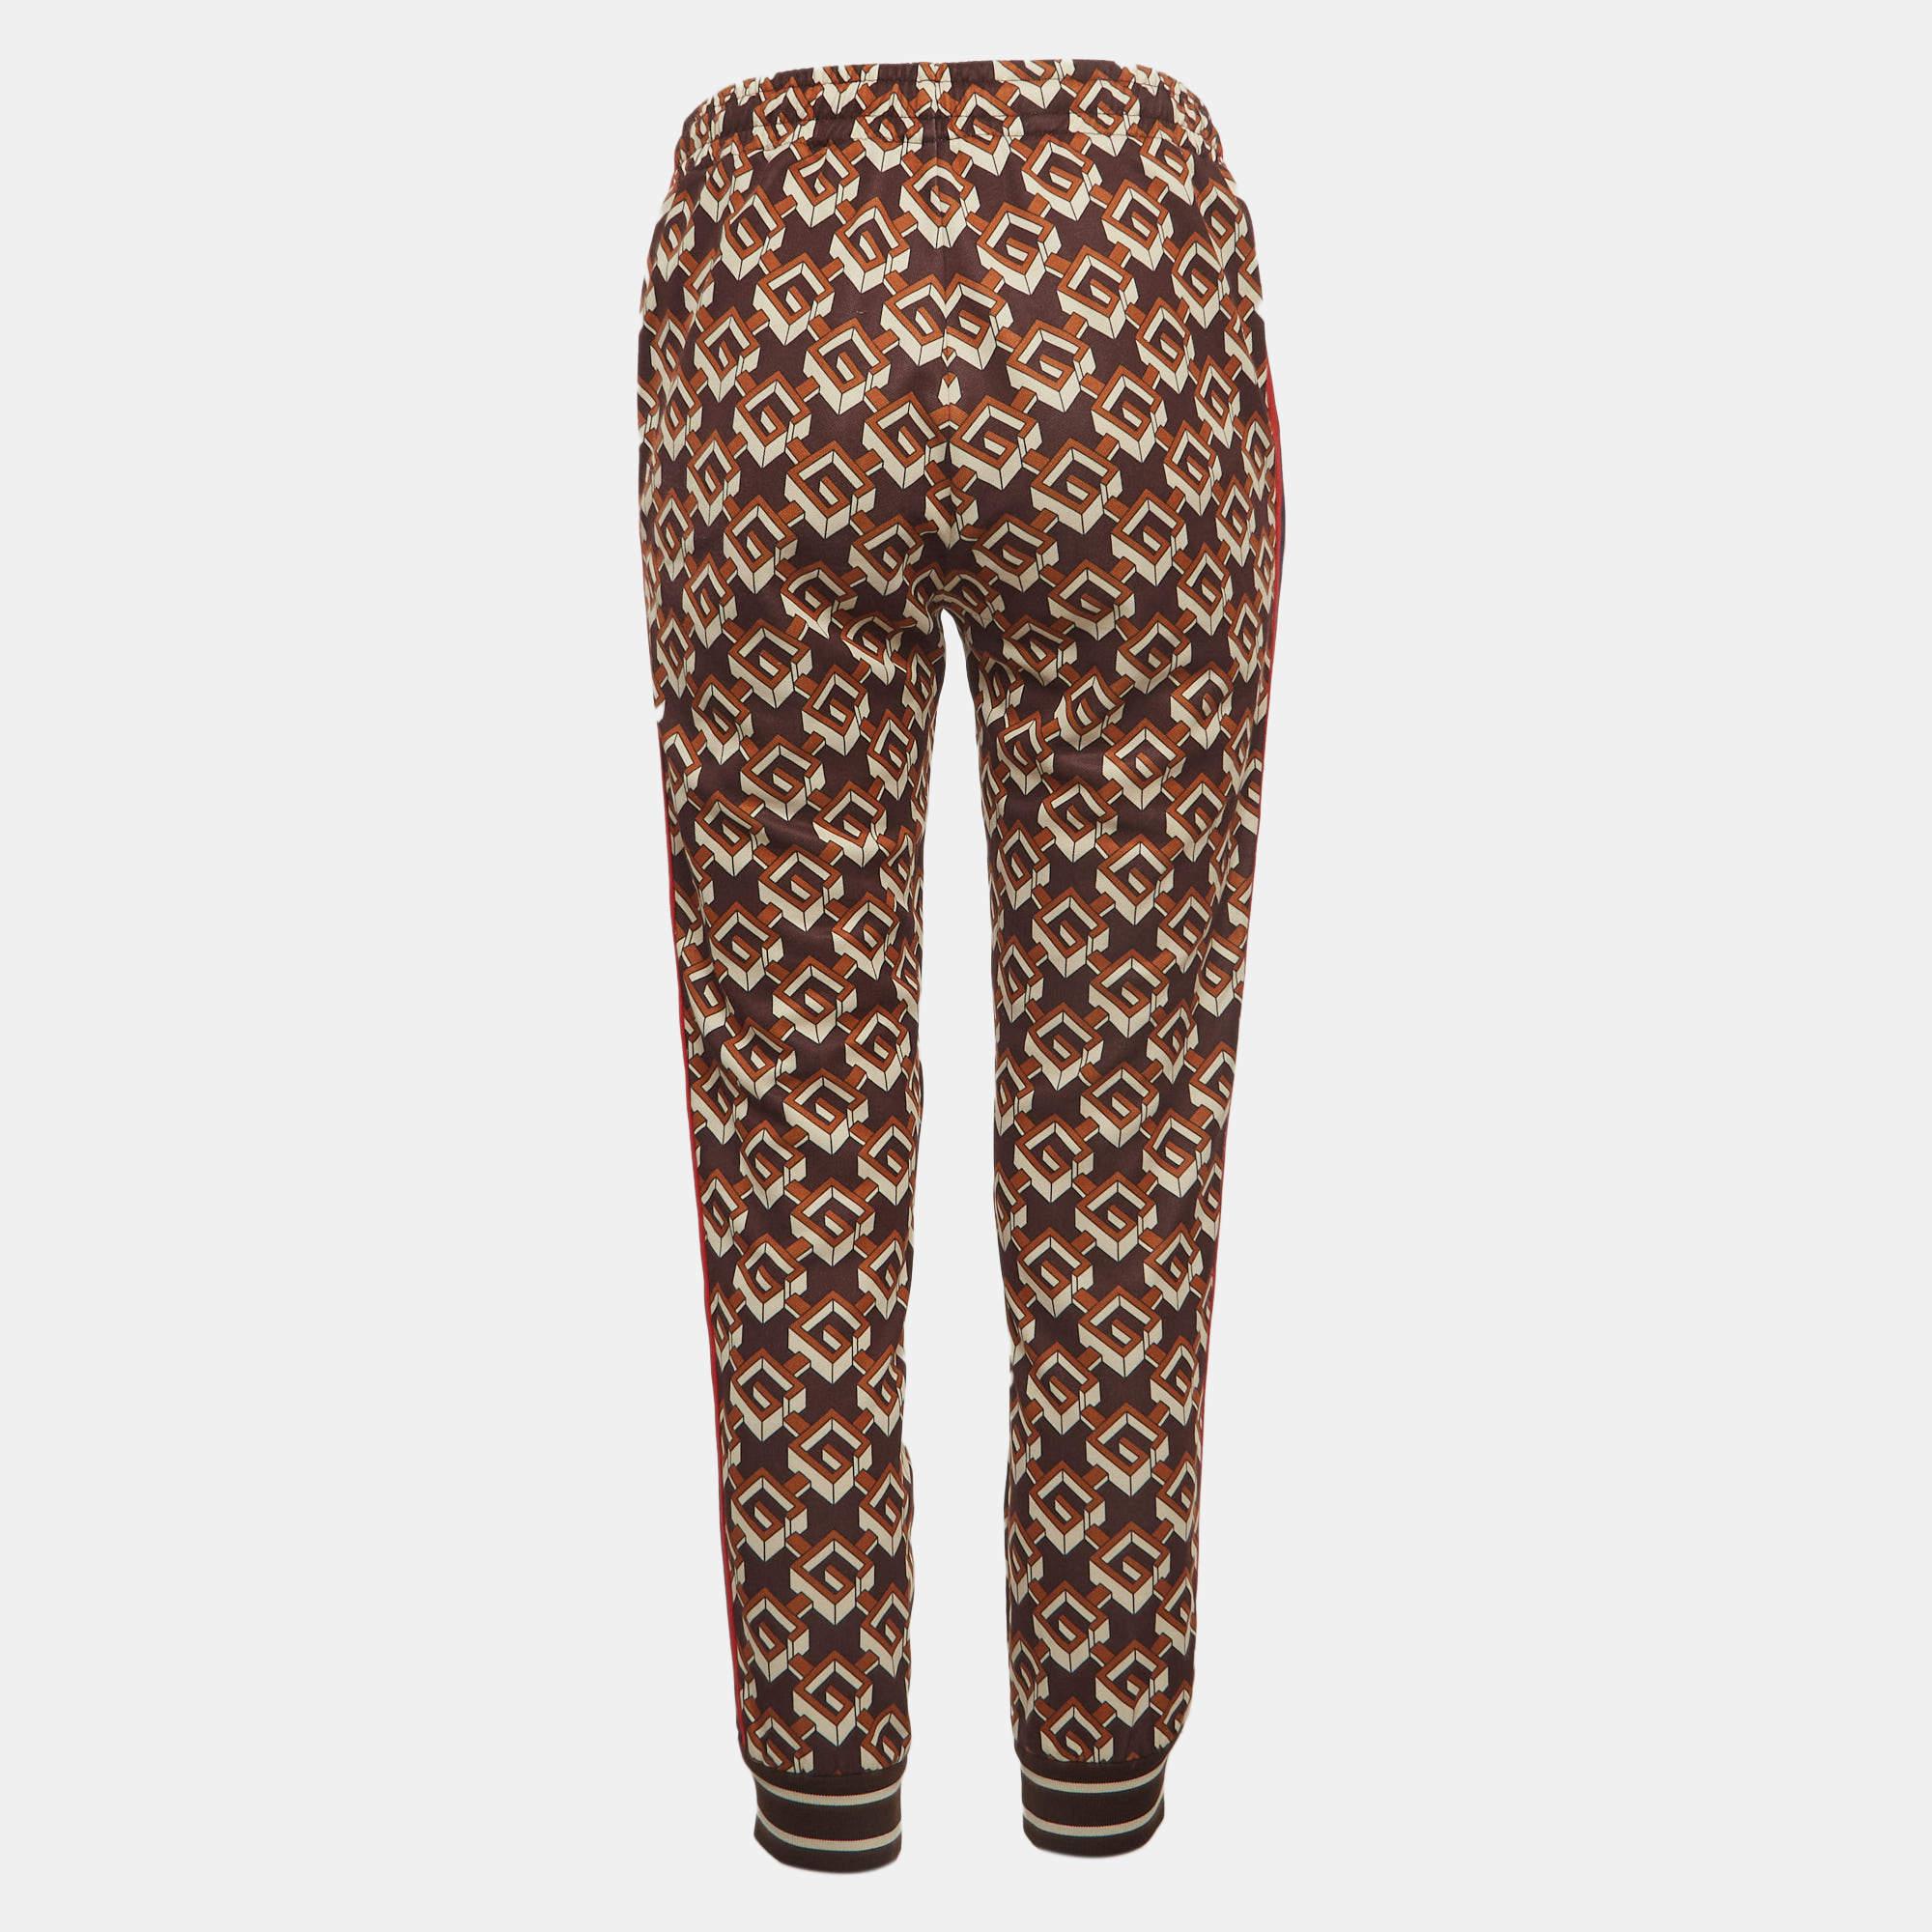 Entspannen Sie sich in Komfort und Stil mit dieser Jogginghose von Gucci. Die Hose aus einer Baumwollmischung hat einen bequemen, elastischen Bund, zwei Taschen und geometrische G-Prints auf allen Seiten.

